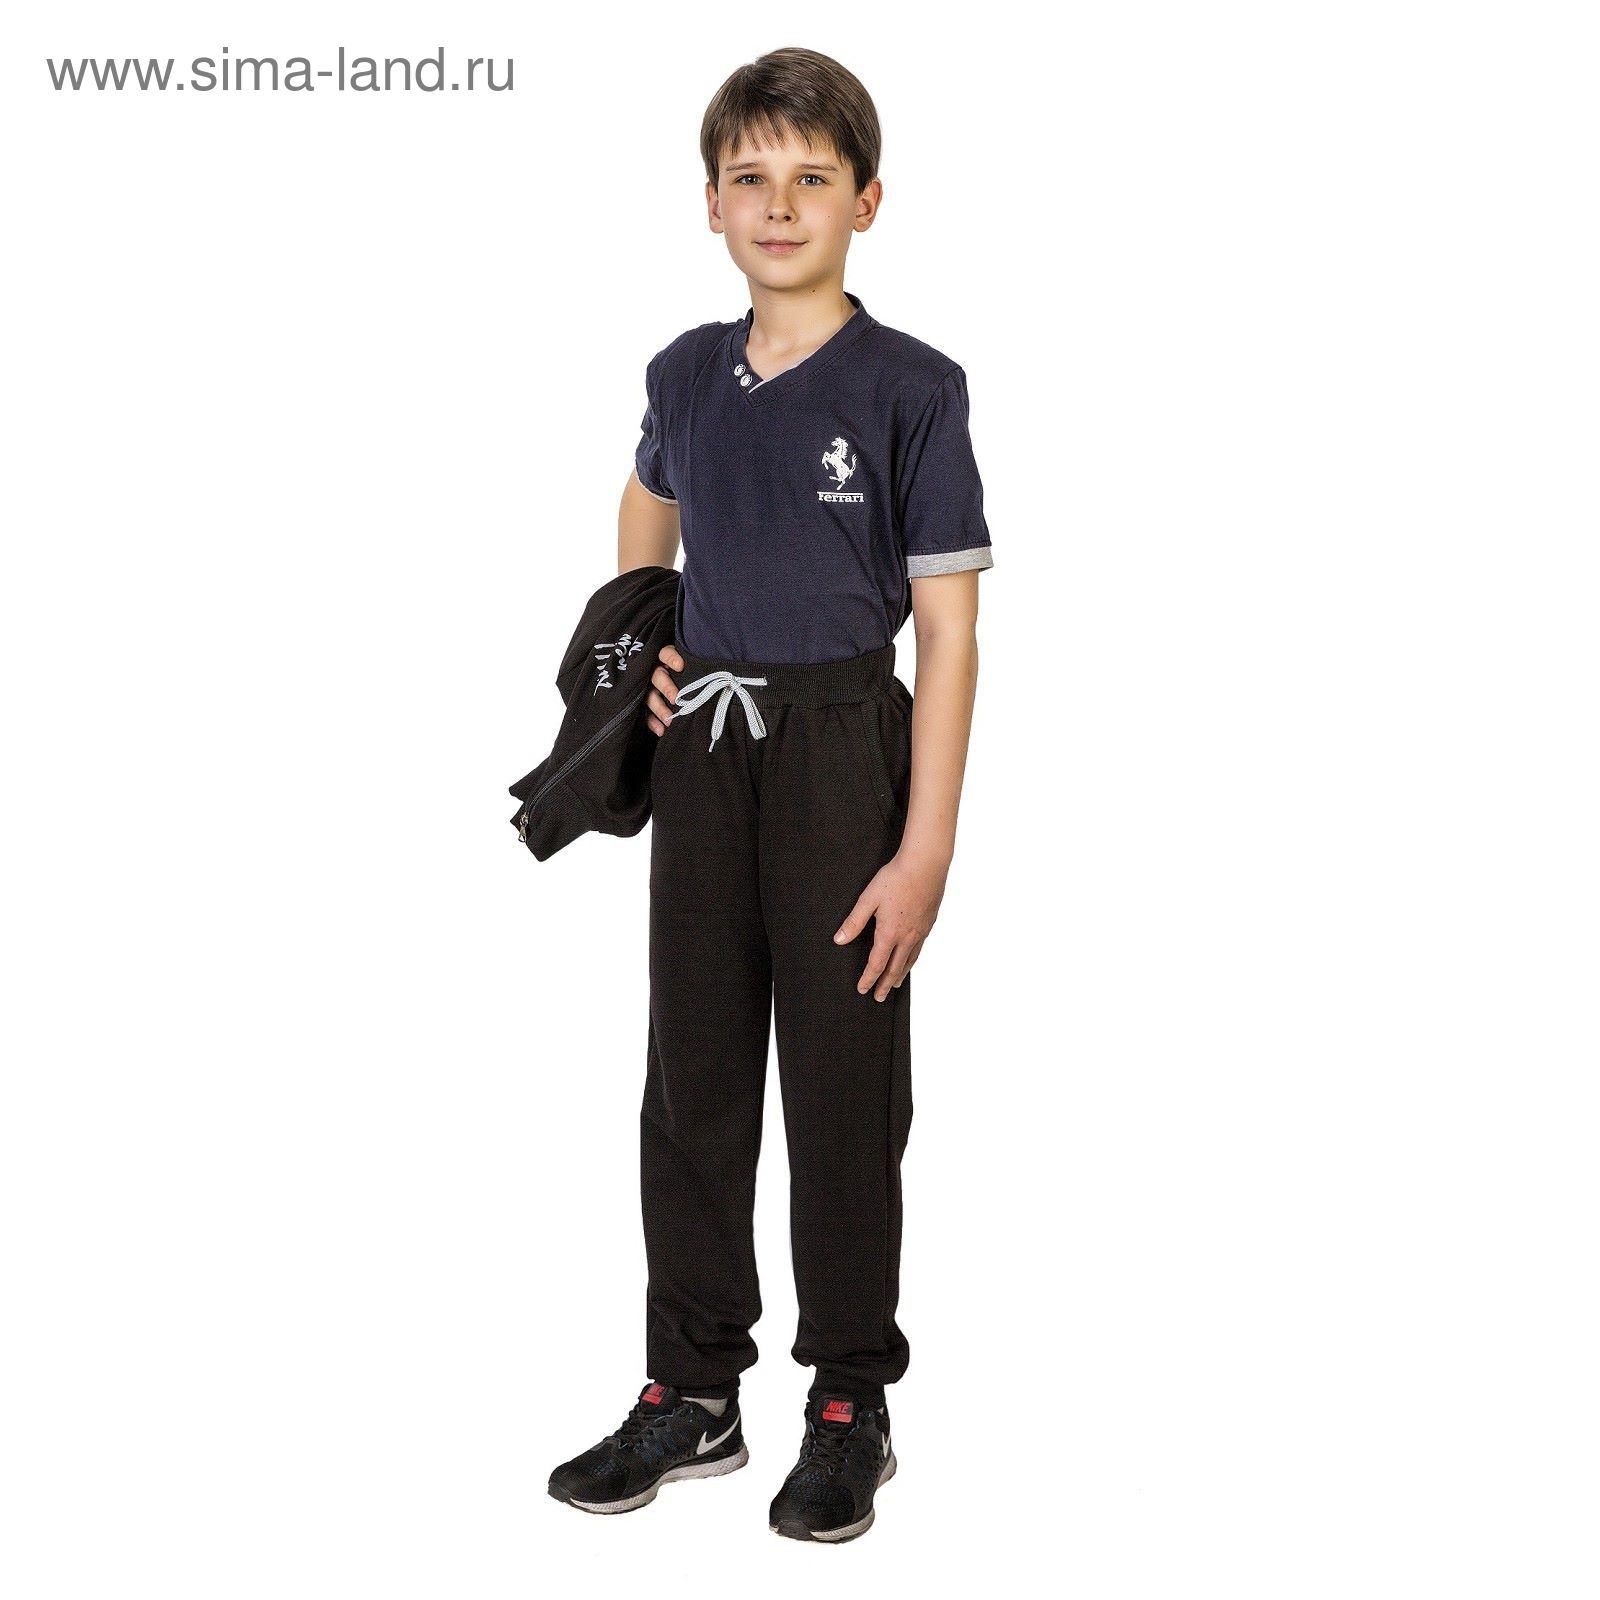 Костюм спортивный для мальчика, рост 122 см (64), цвет чёрный 33-КД-28Ш